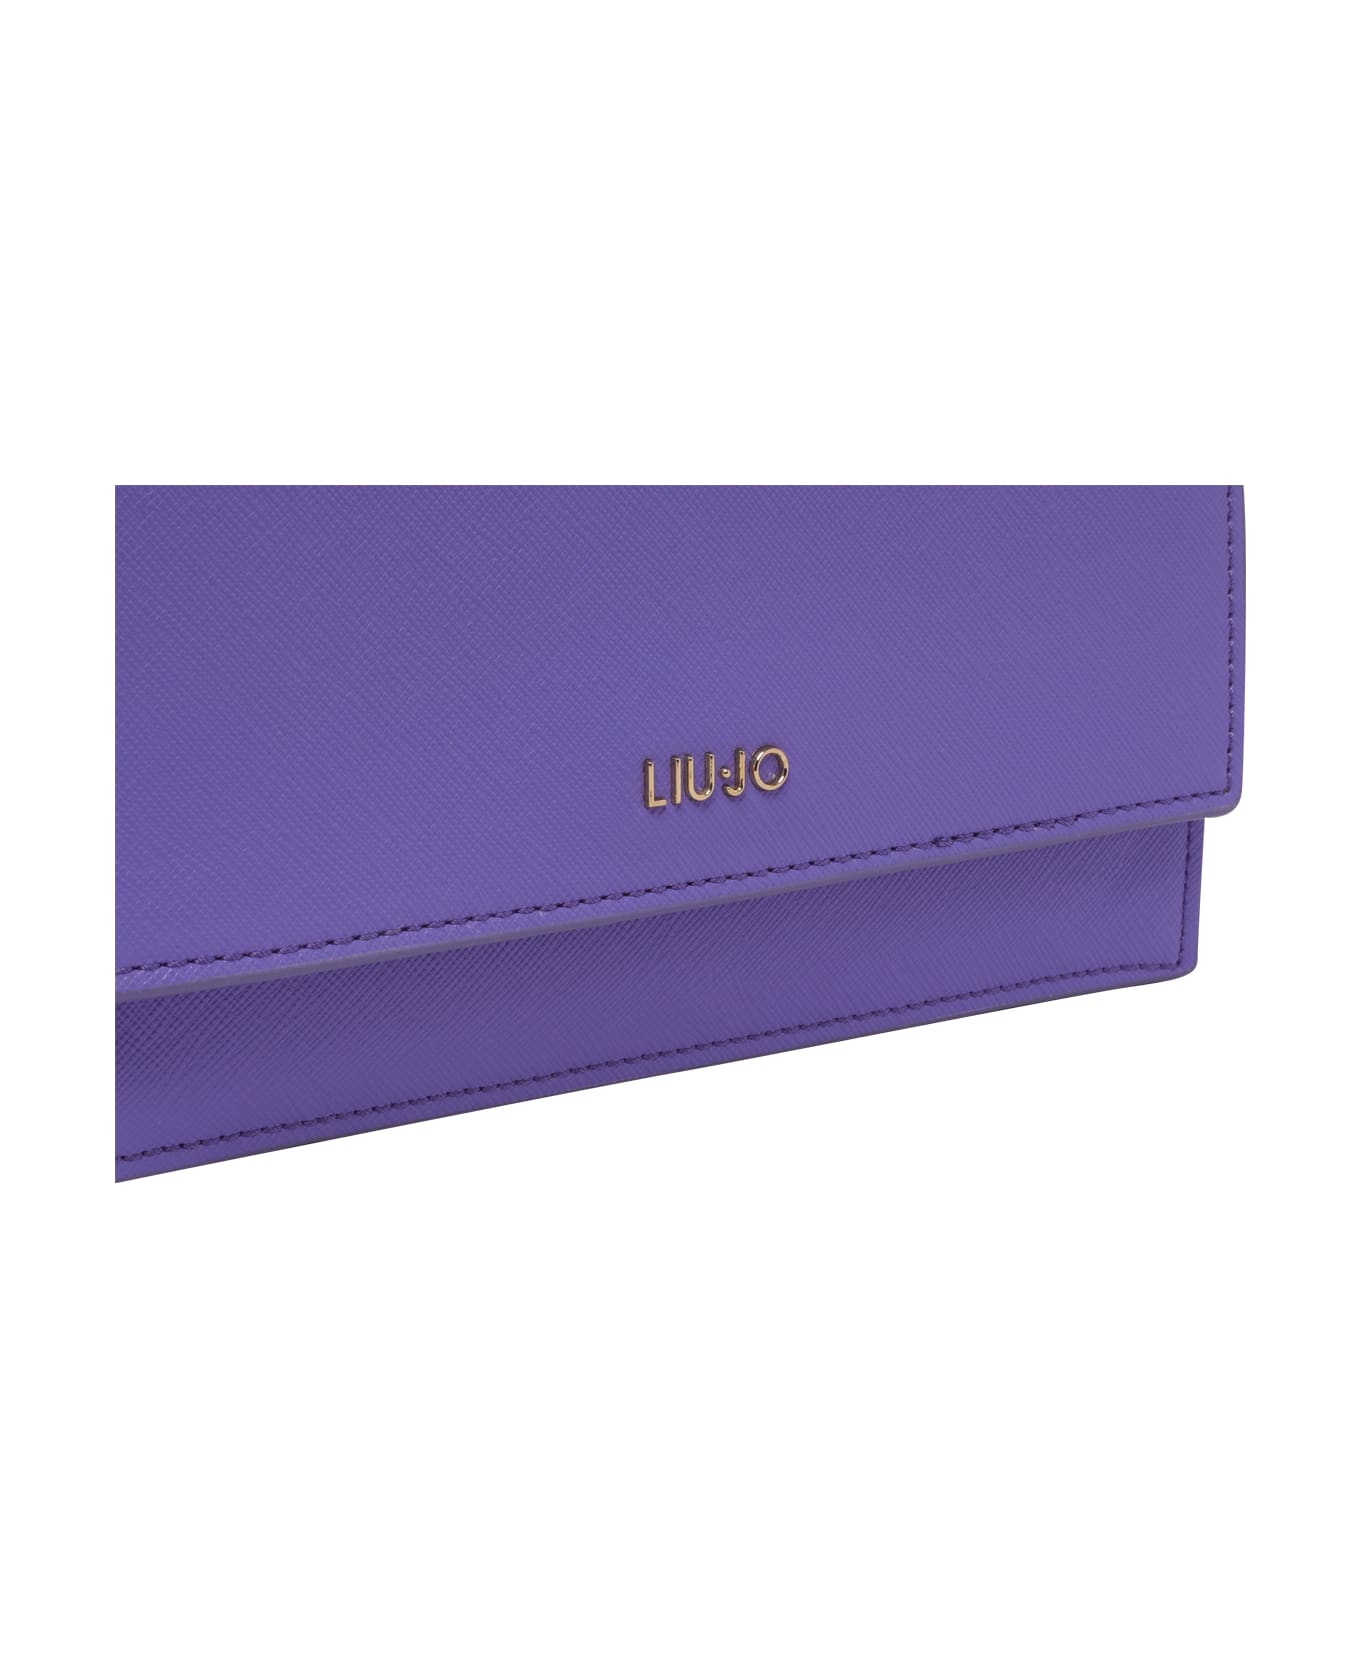 Liu-Jo Logo Crossbody Bag - Summer Lilac クラッチバッグ